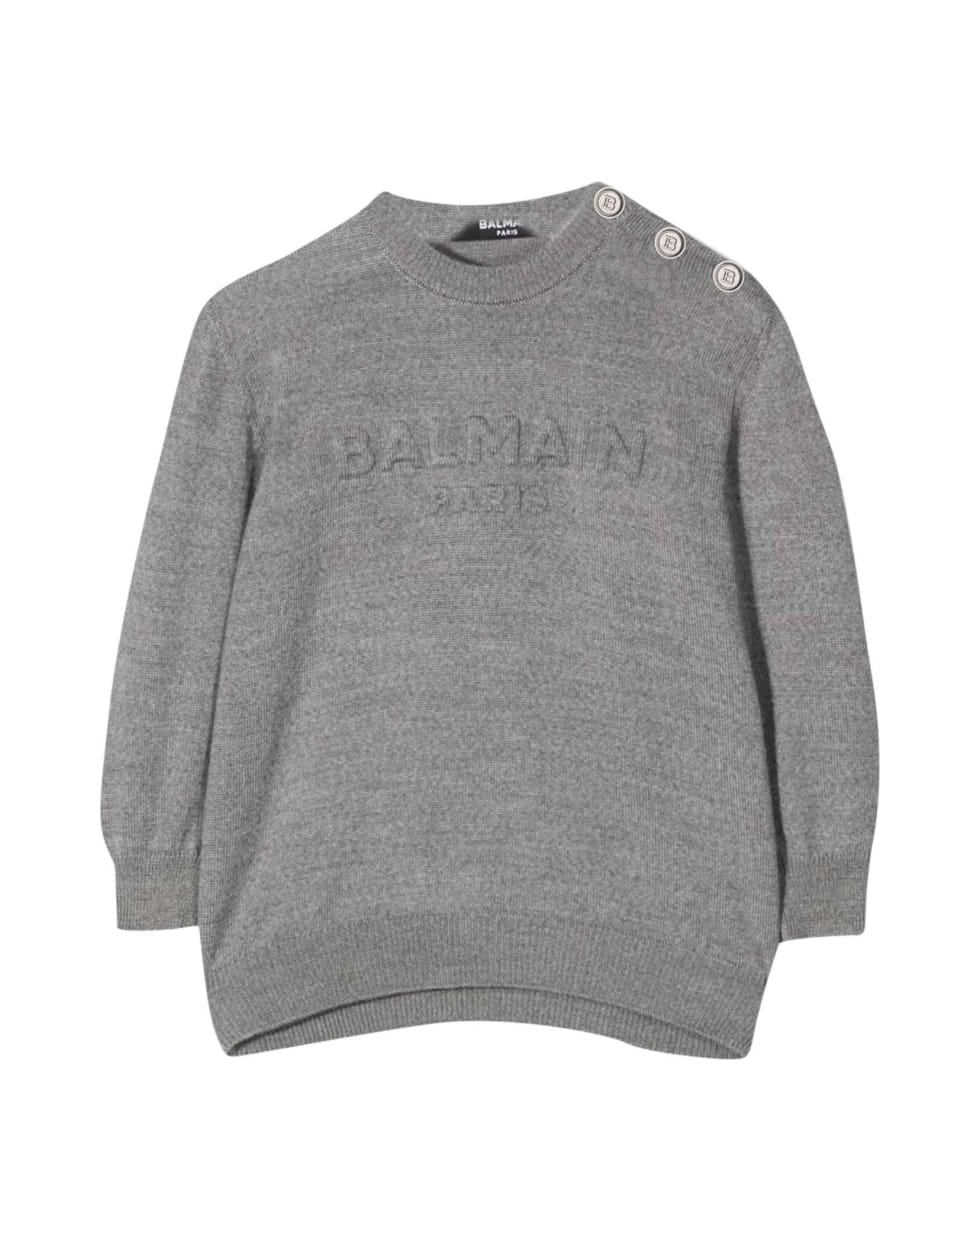 Balmain Newborn Gray Sweater - Grigio